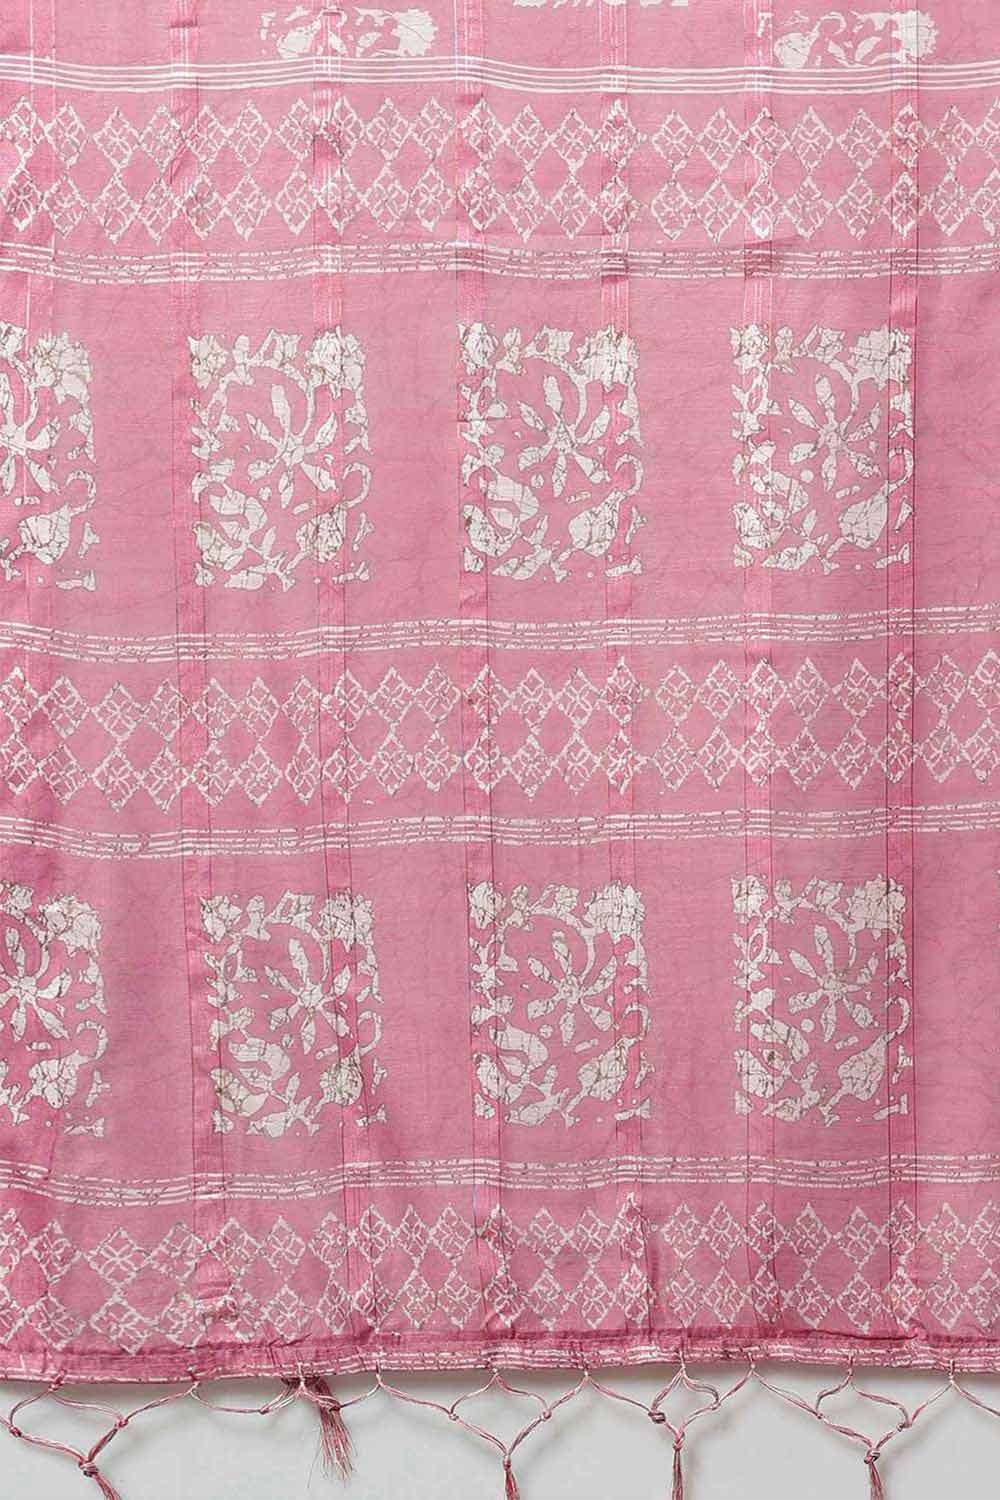 Taj Pink Soft Silk Block Print Printed One Minute Saree